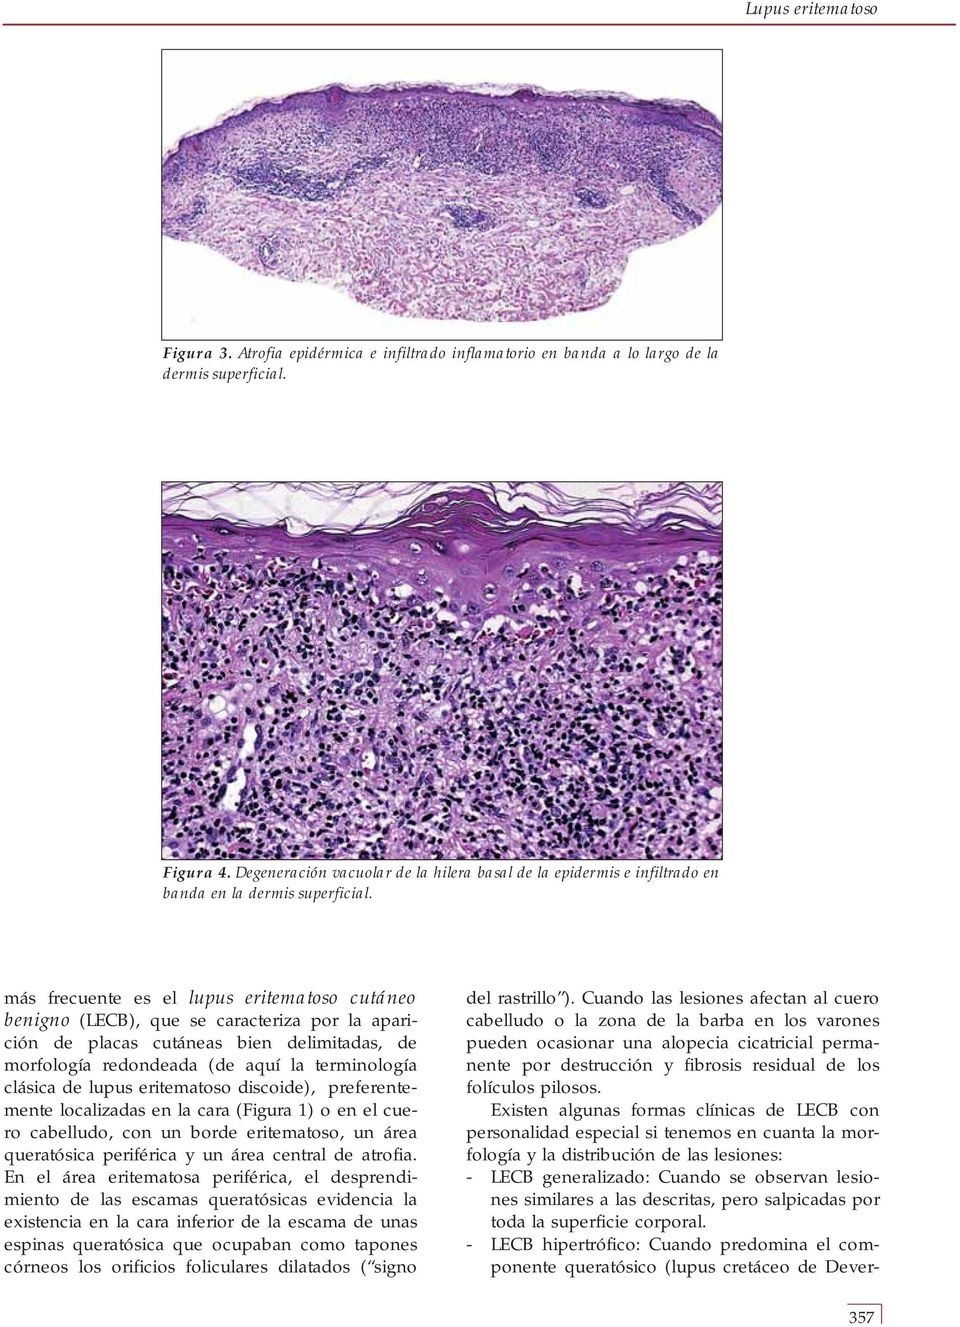 más frecuente es el lupus eritematoso cutáneo benigno (LECB), que se caracteriza por la aparición de placas cutáneas bien delimitadas, de morfología redondeada (de aquí la terminología clásica de